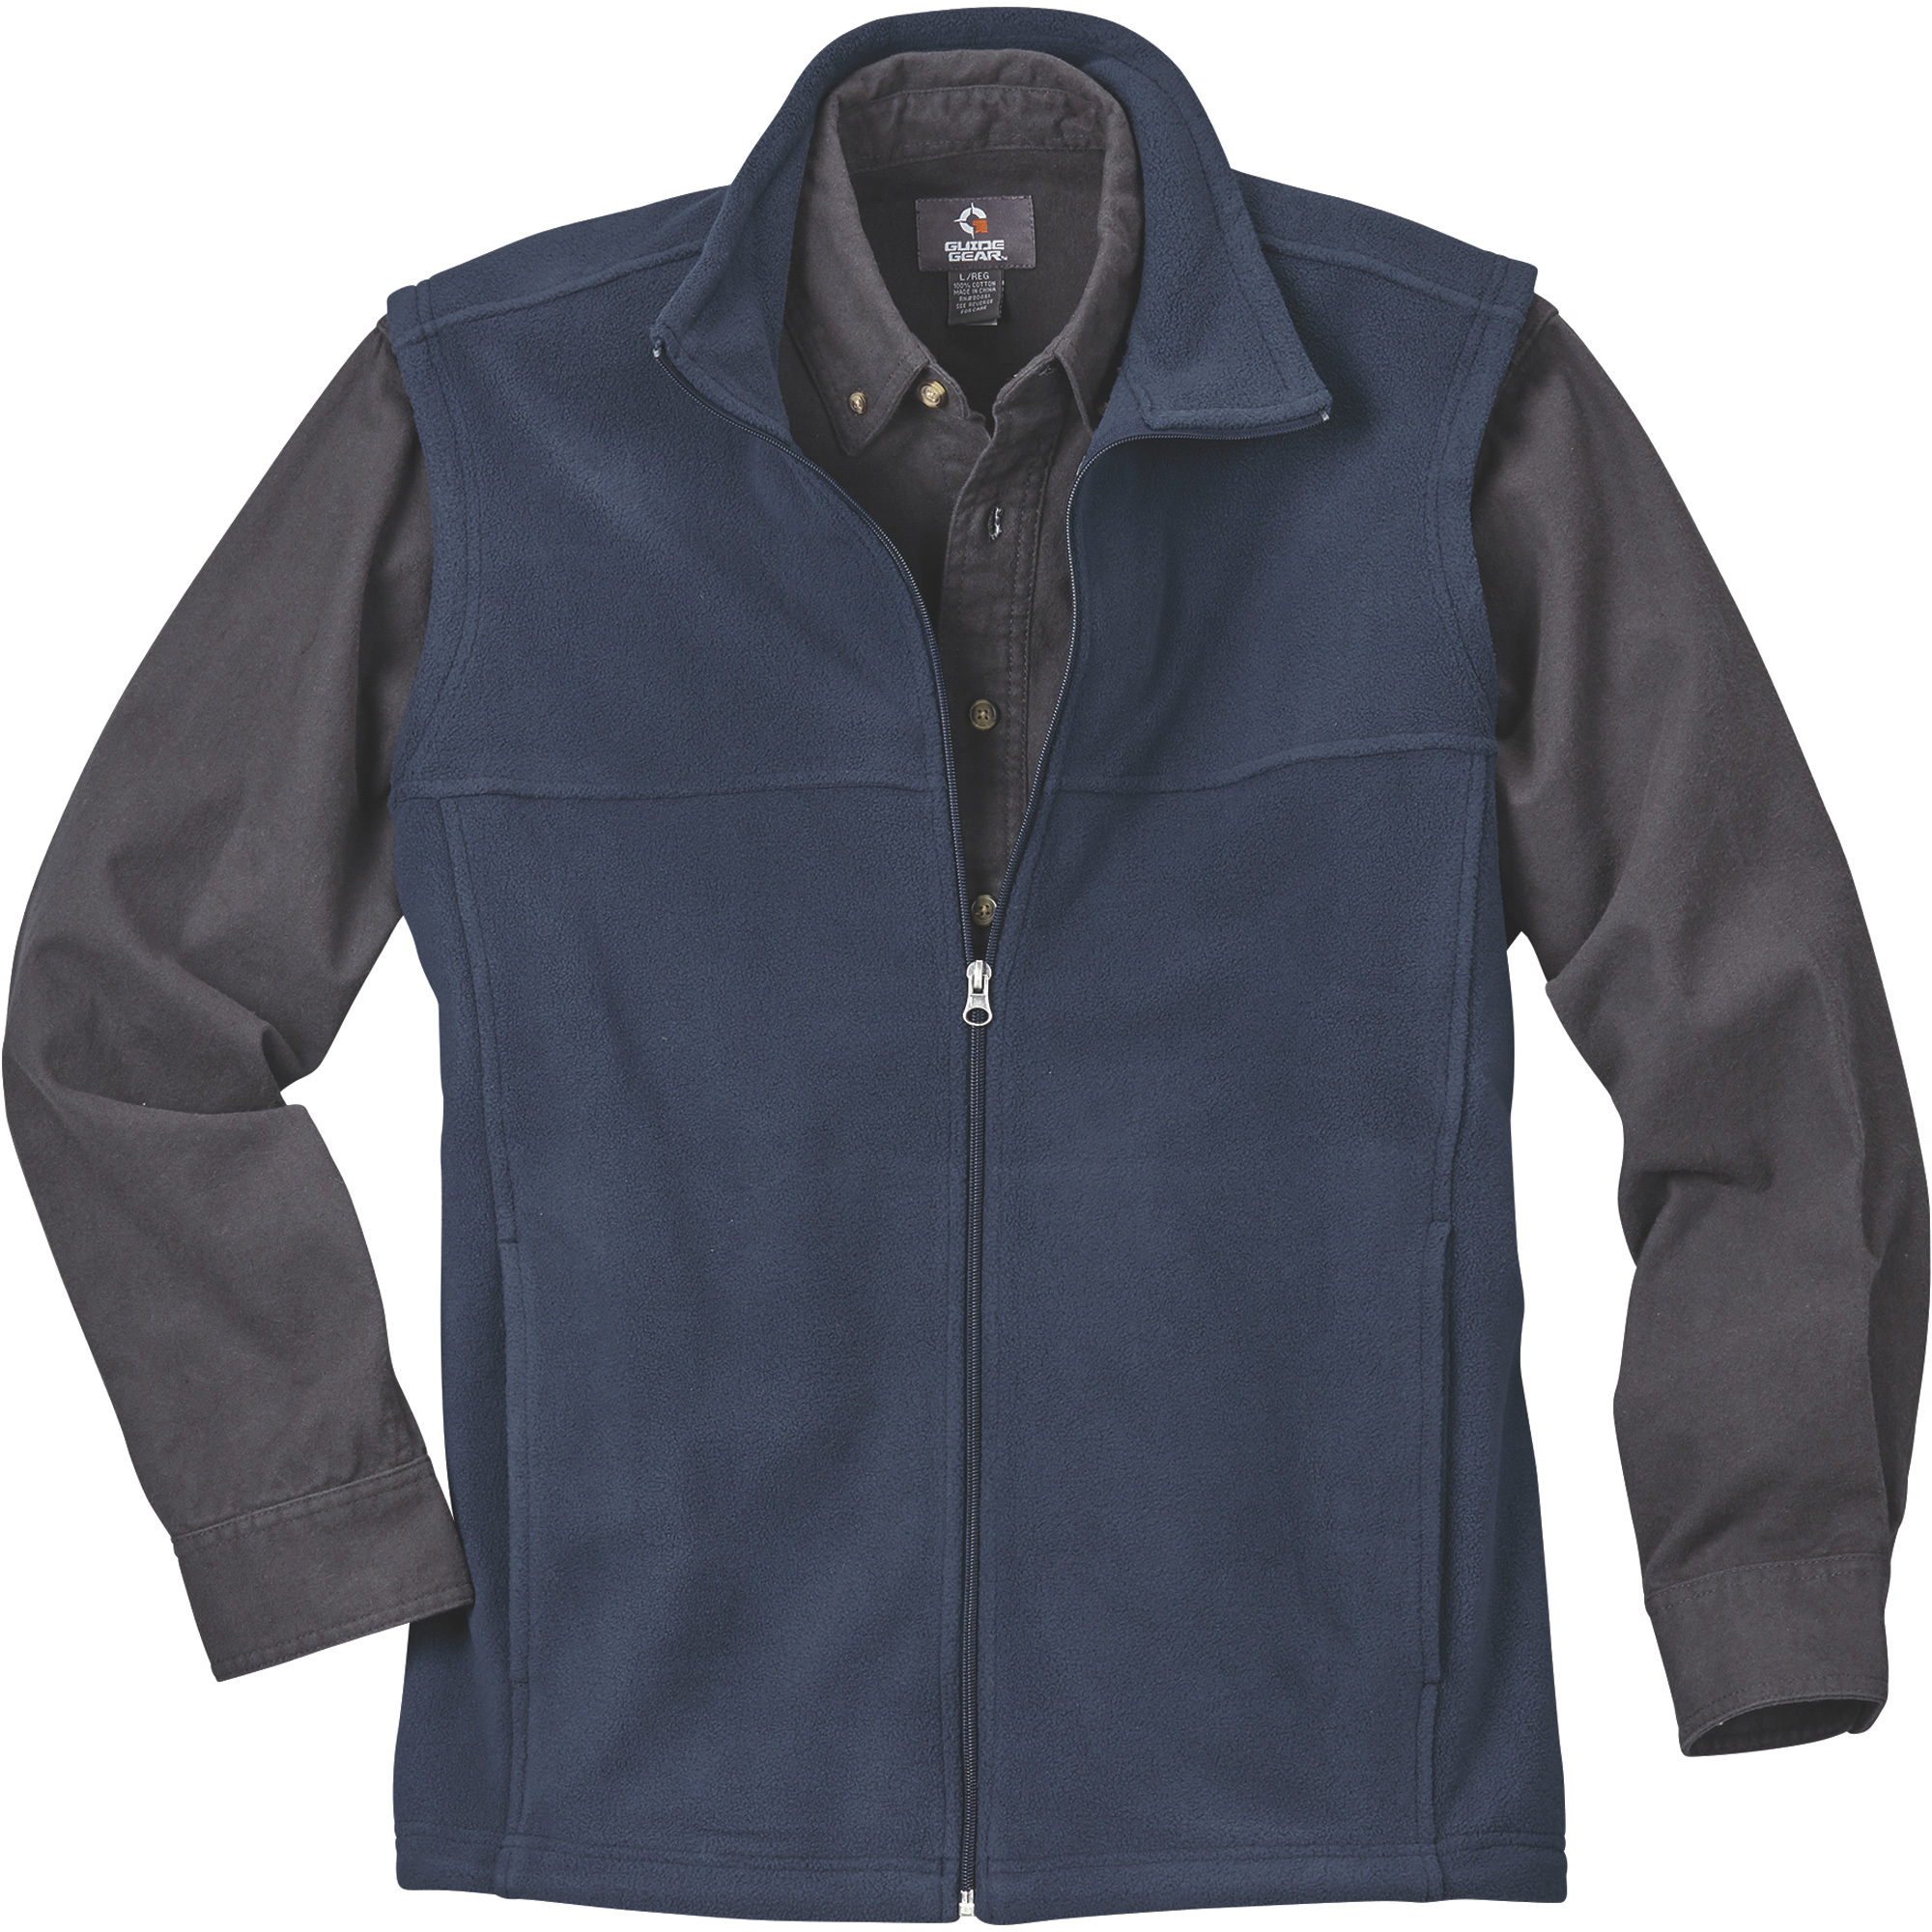 Gravel Gear Men's Zip-Up Fleece Vest â Navy, 2XL